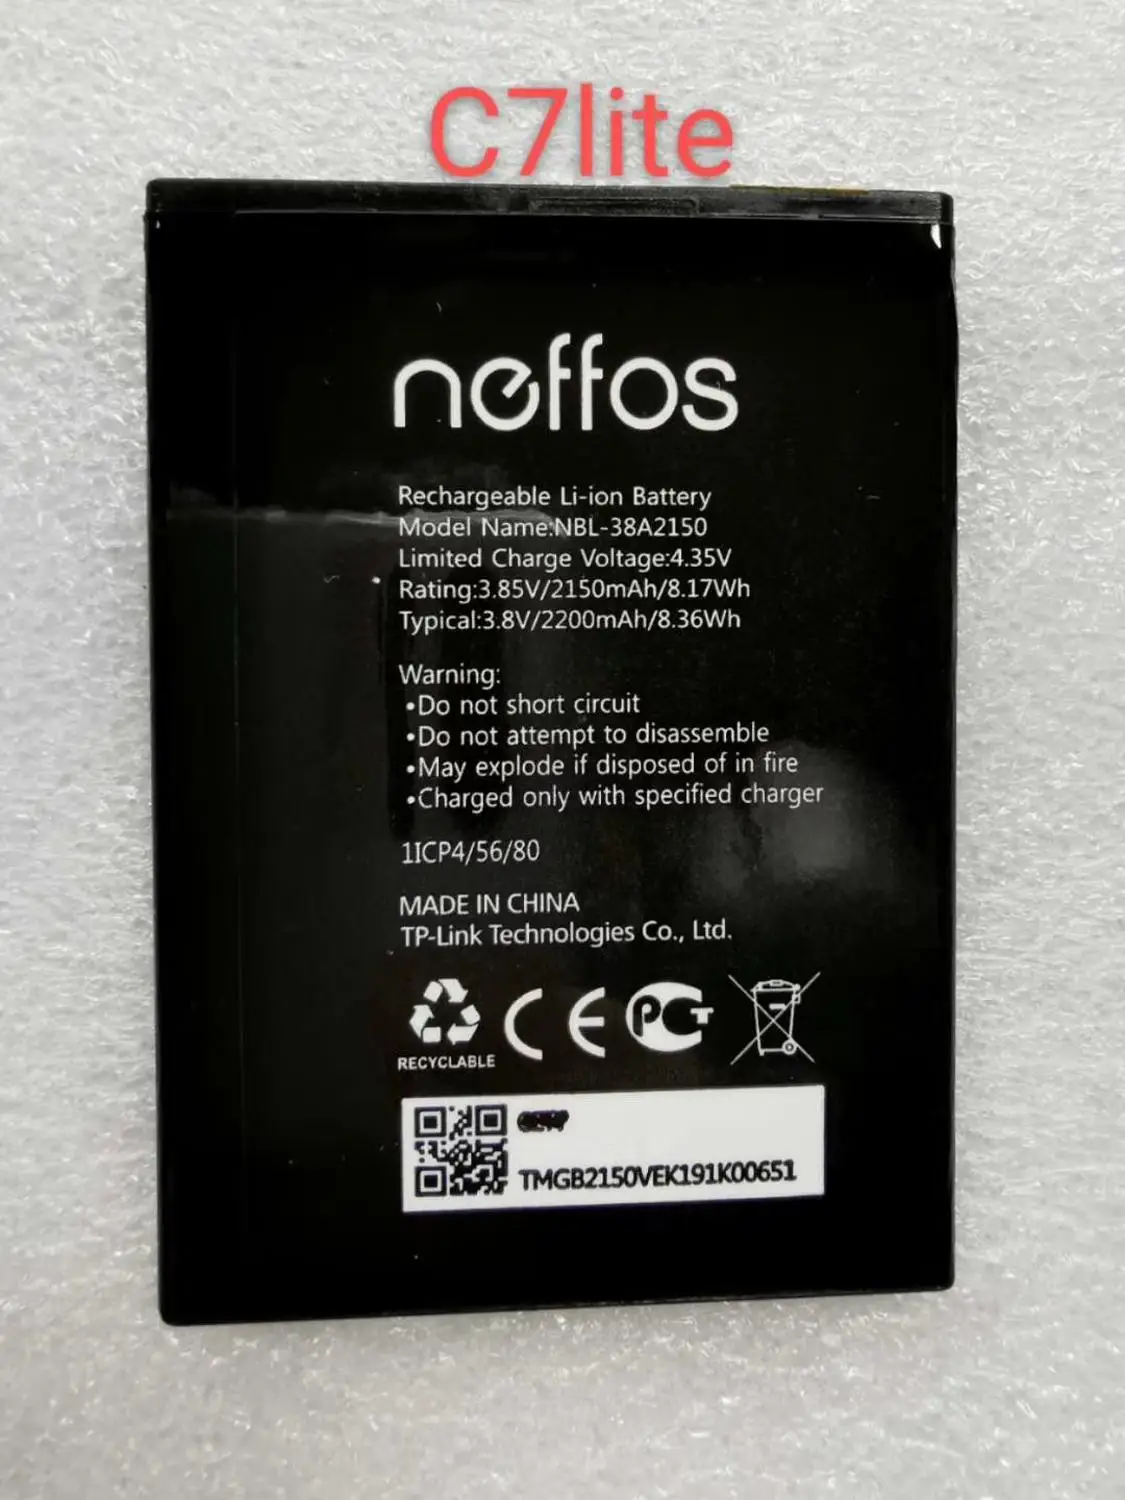 Batería de NBL-38A2150 de alta calidad para teléfono móvil, 2150mAh, tp-link, Neffos C7 lite, nueva